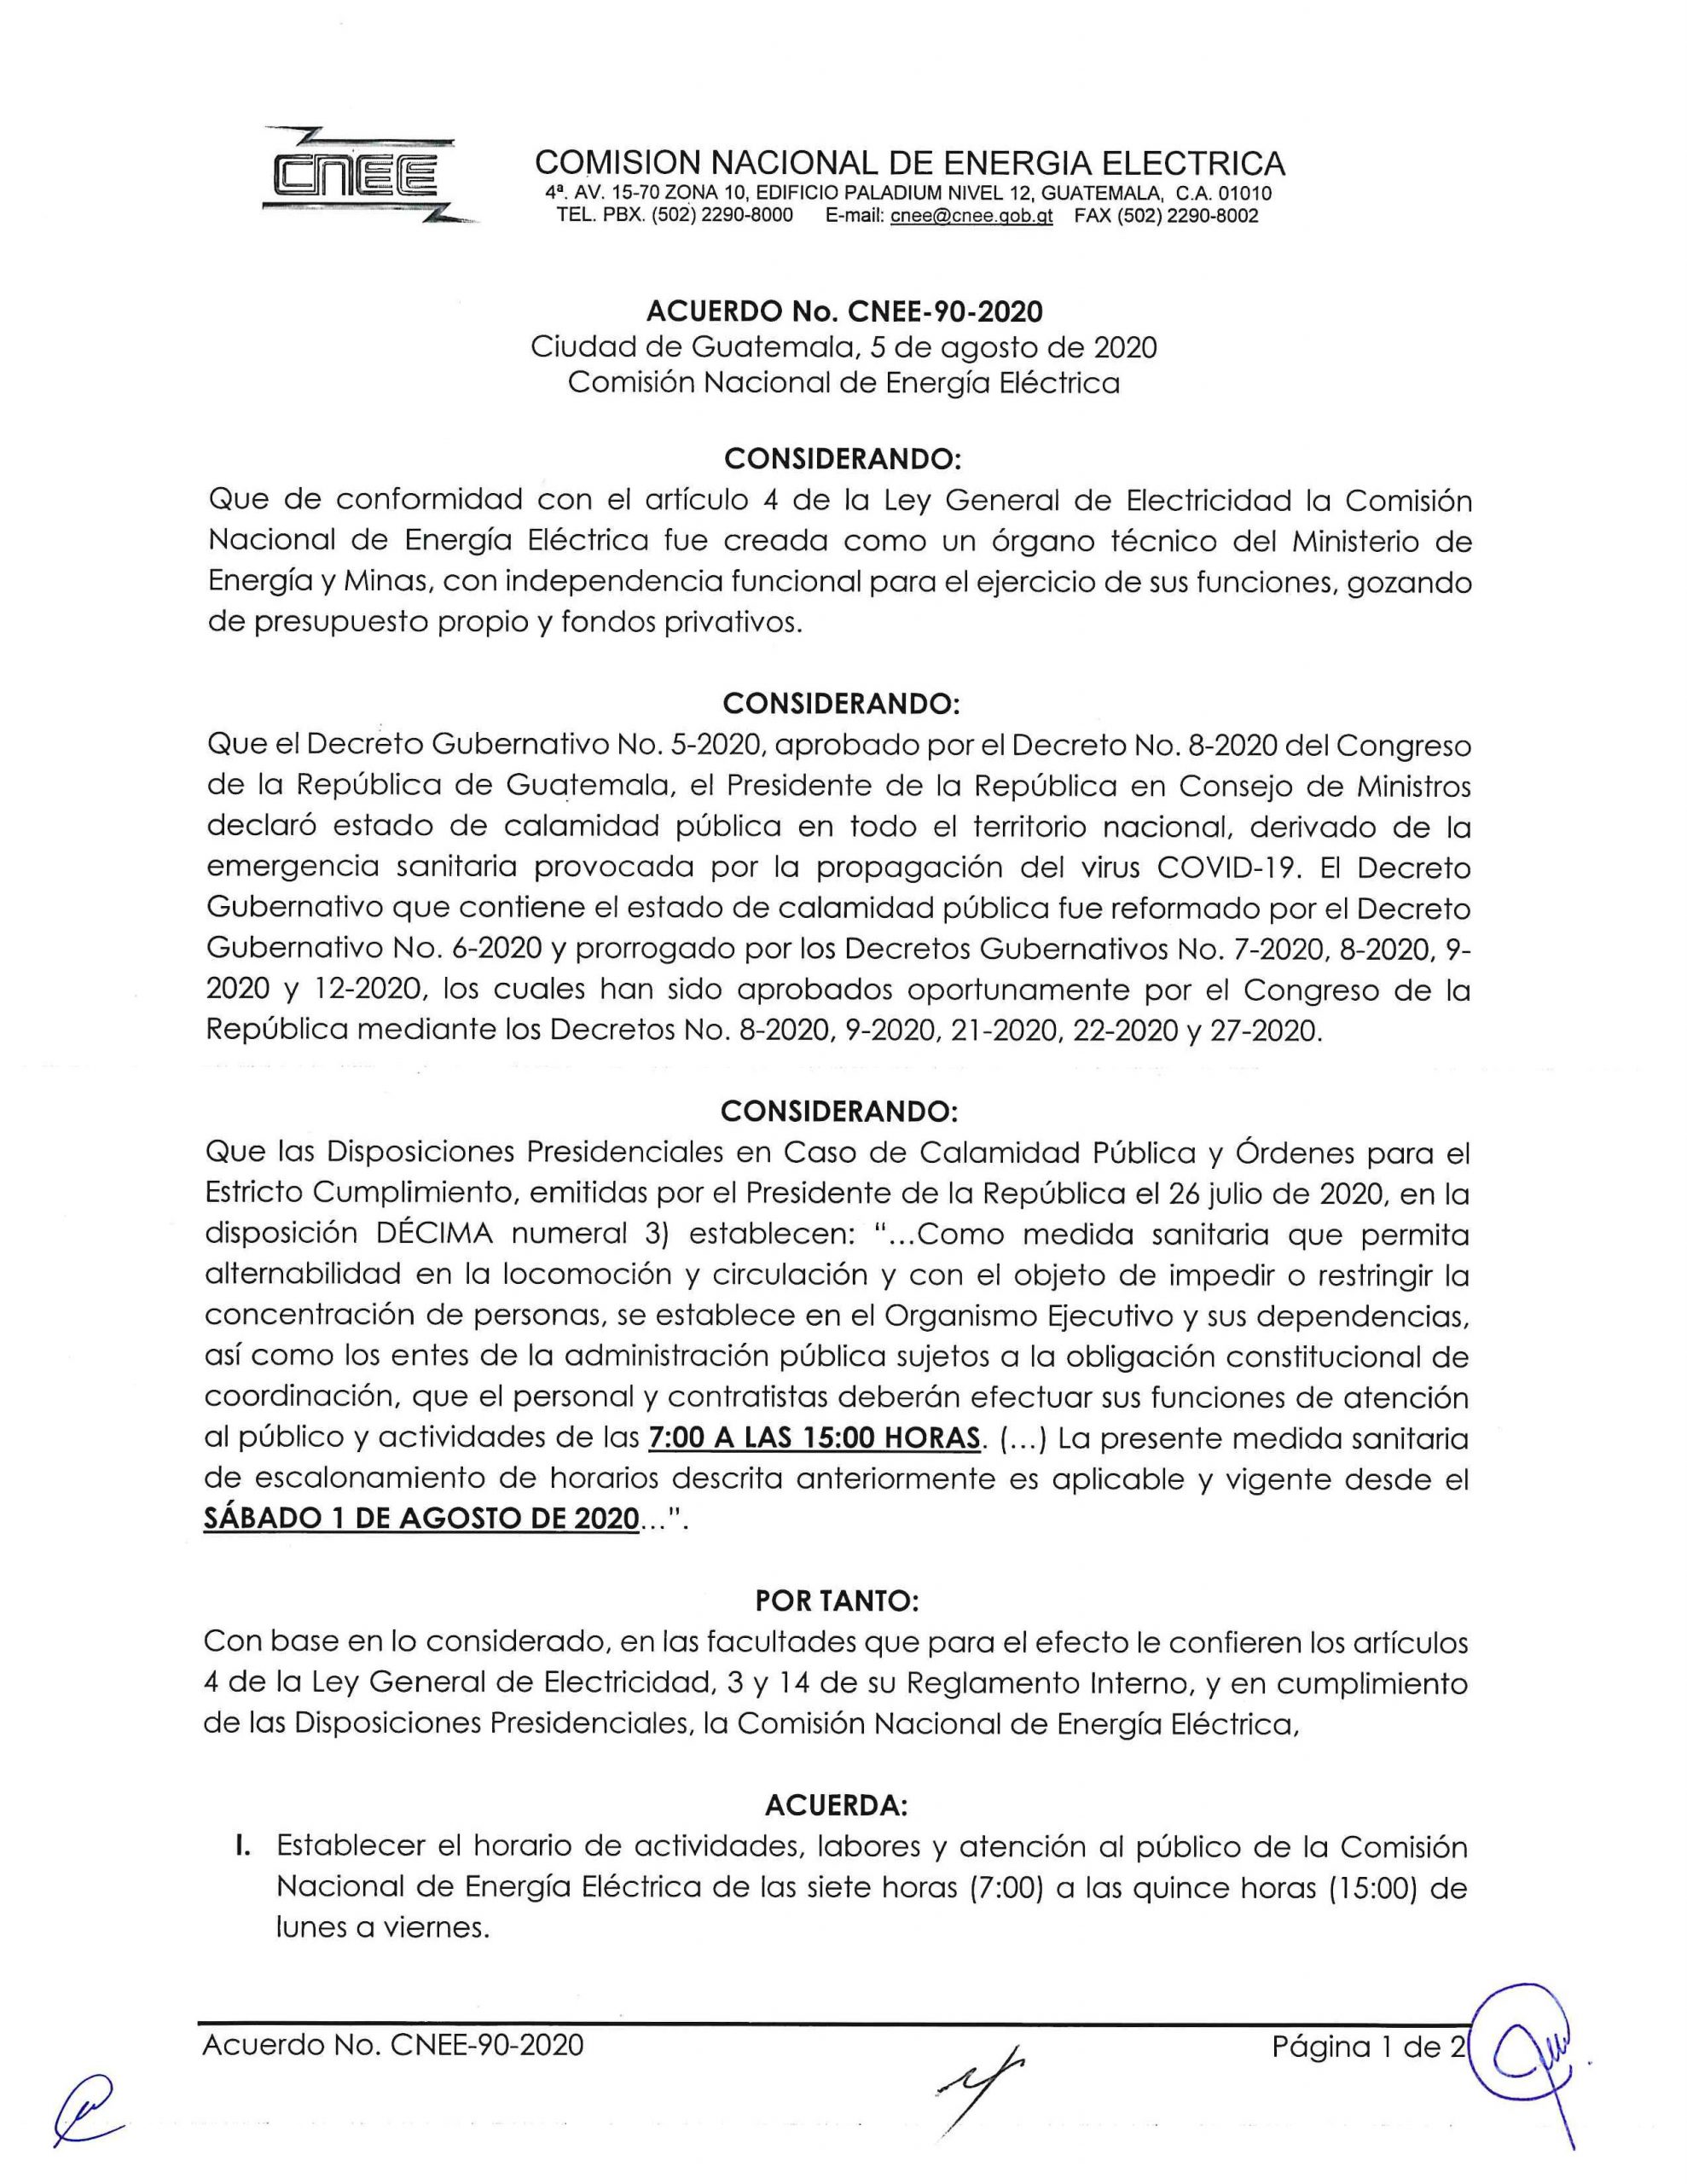 Acuerdo CNEE-90-2020, horario de trabajo